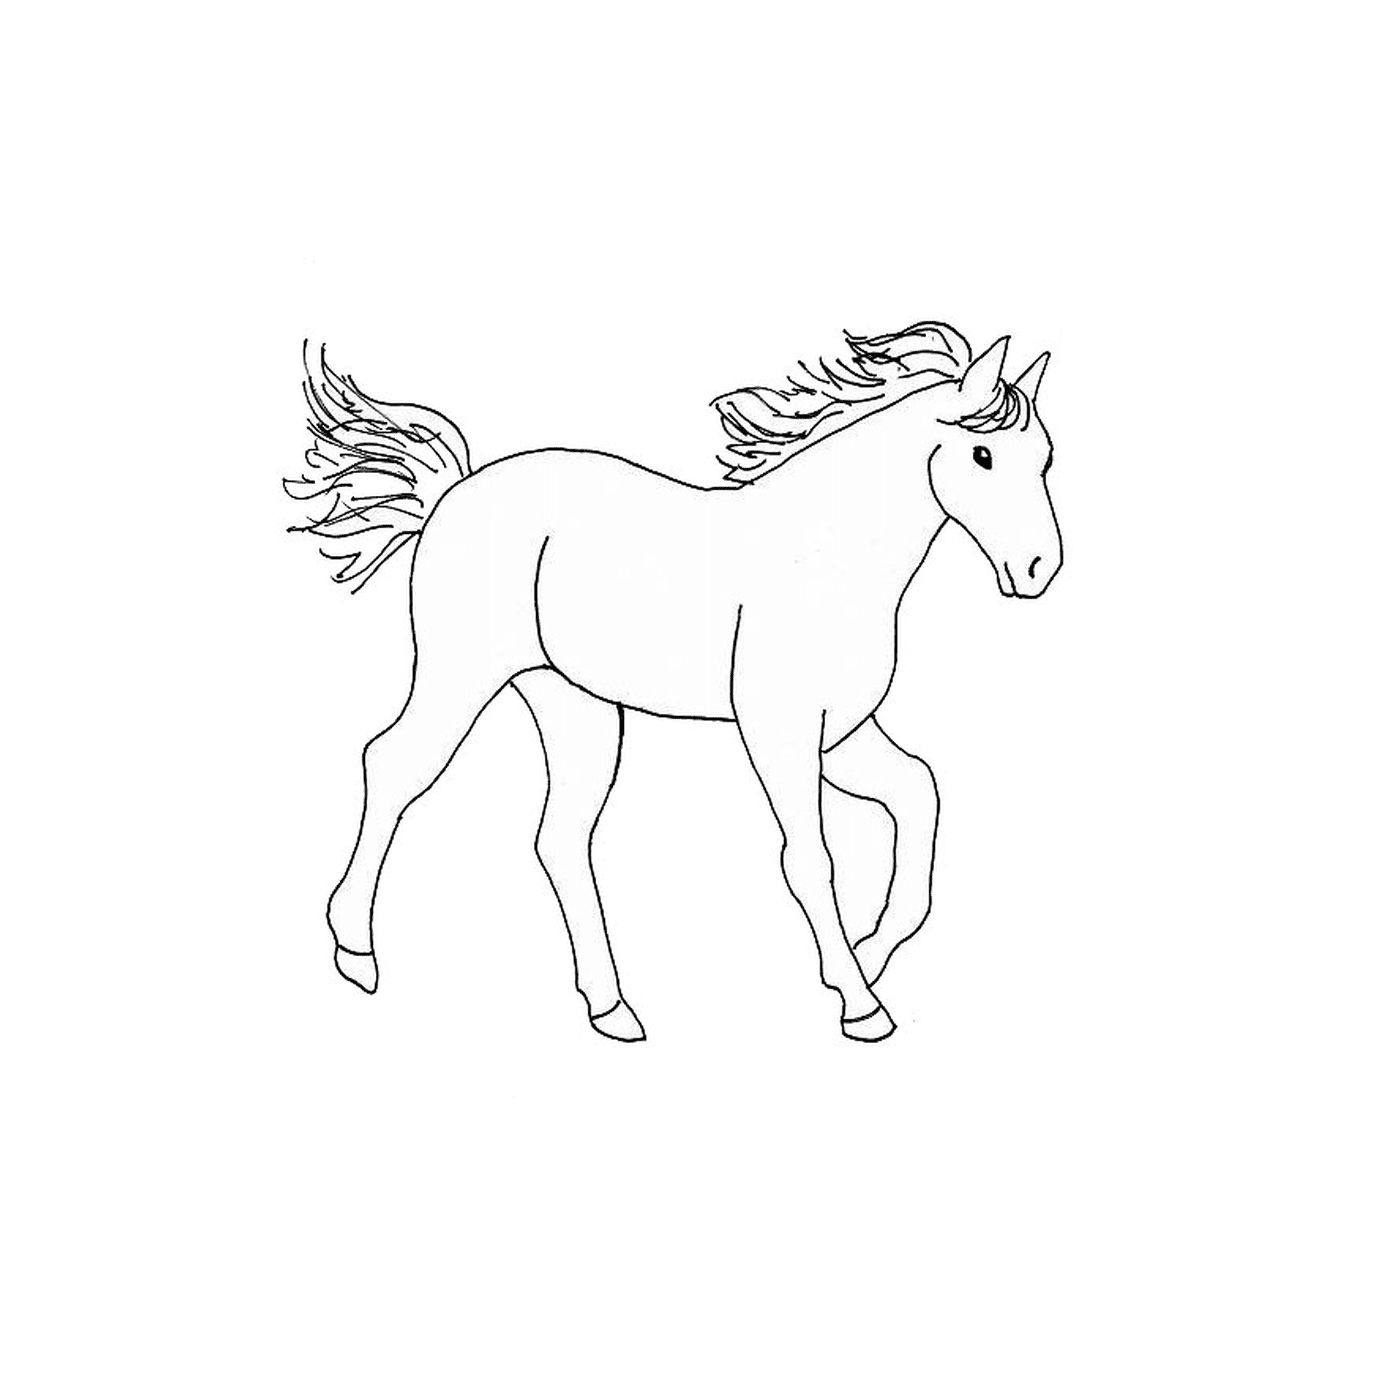  Caballo - Un caballo 